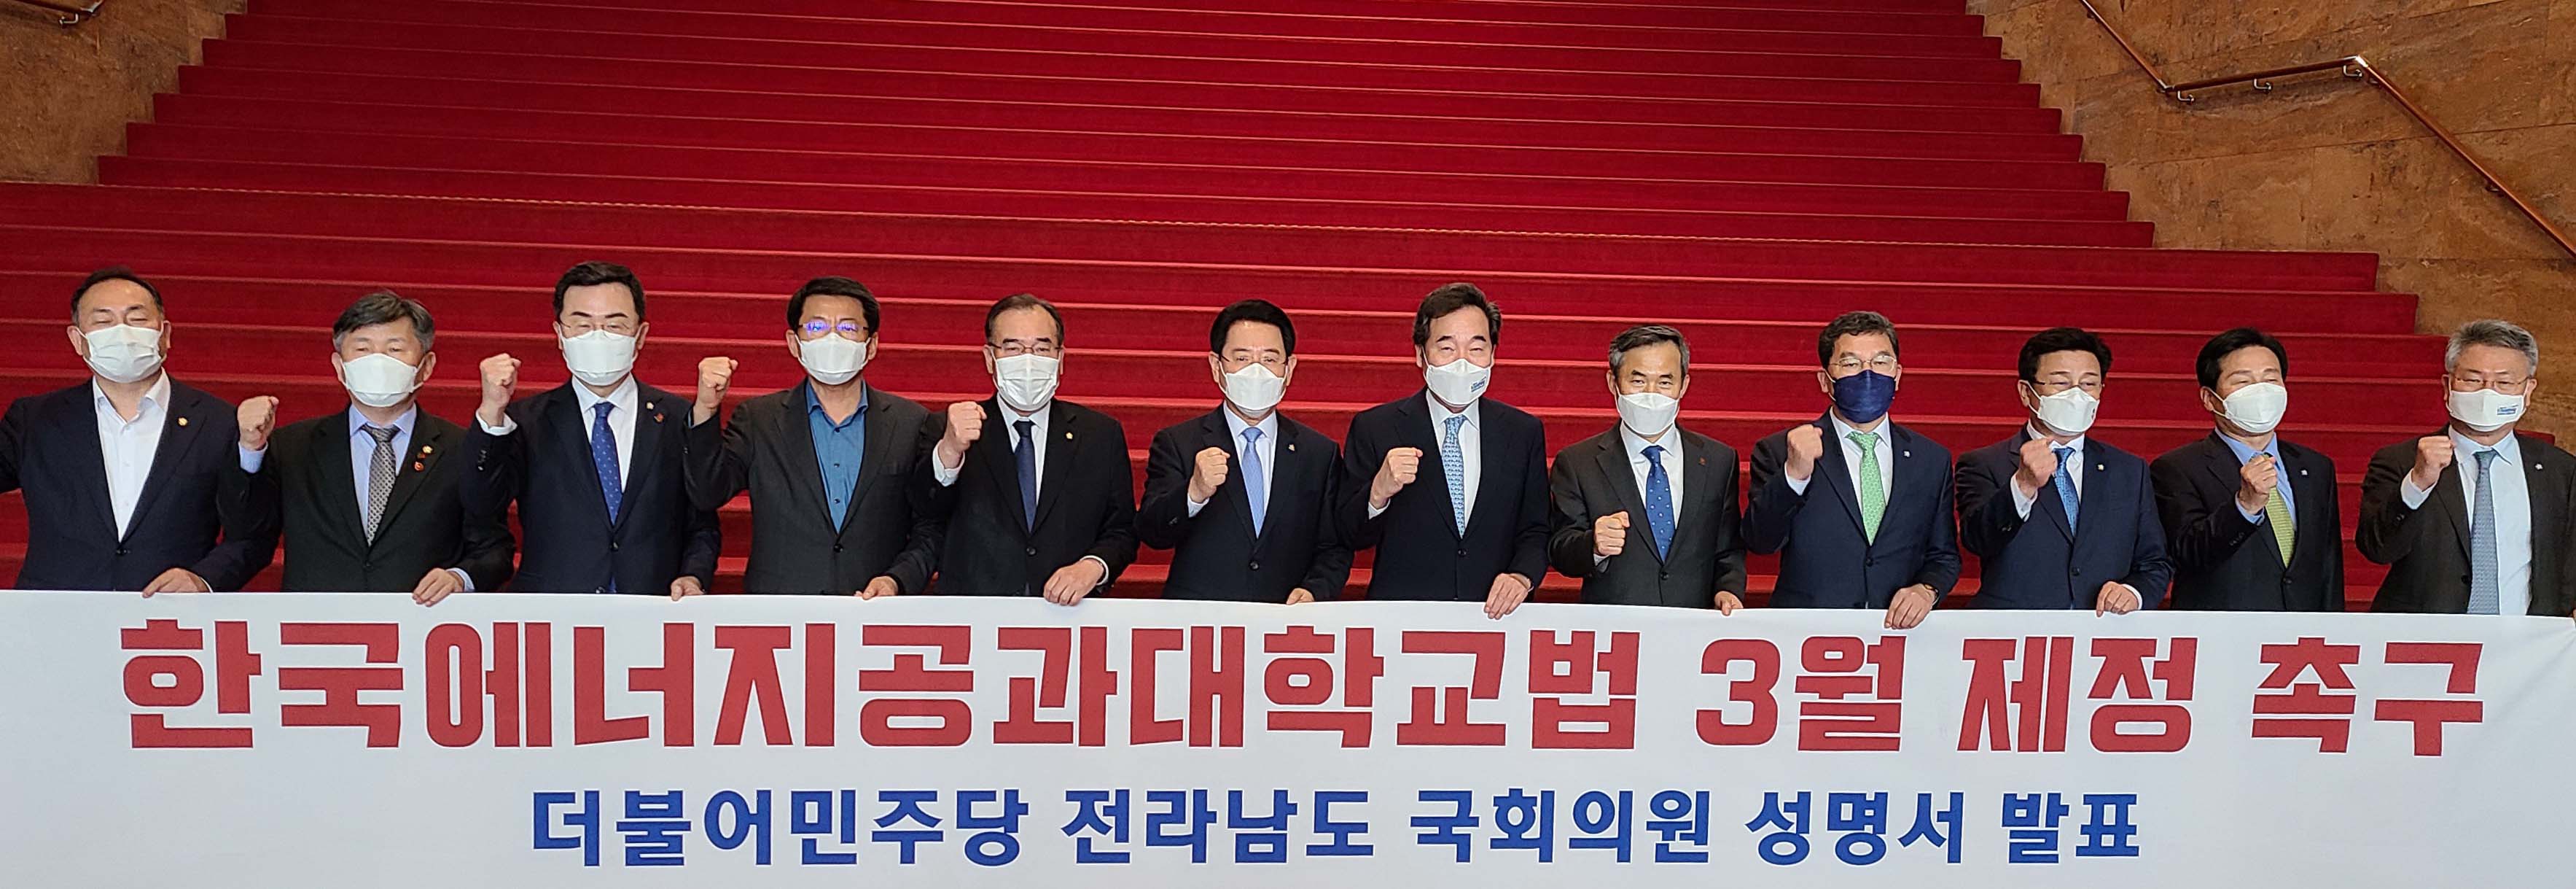 한국에너지공과대학교법 3월 제정 촉구 성명서 발표1